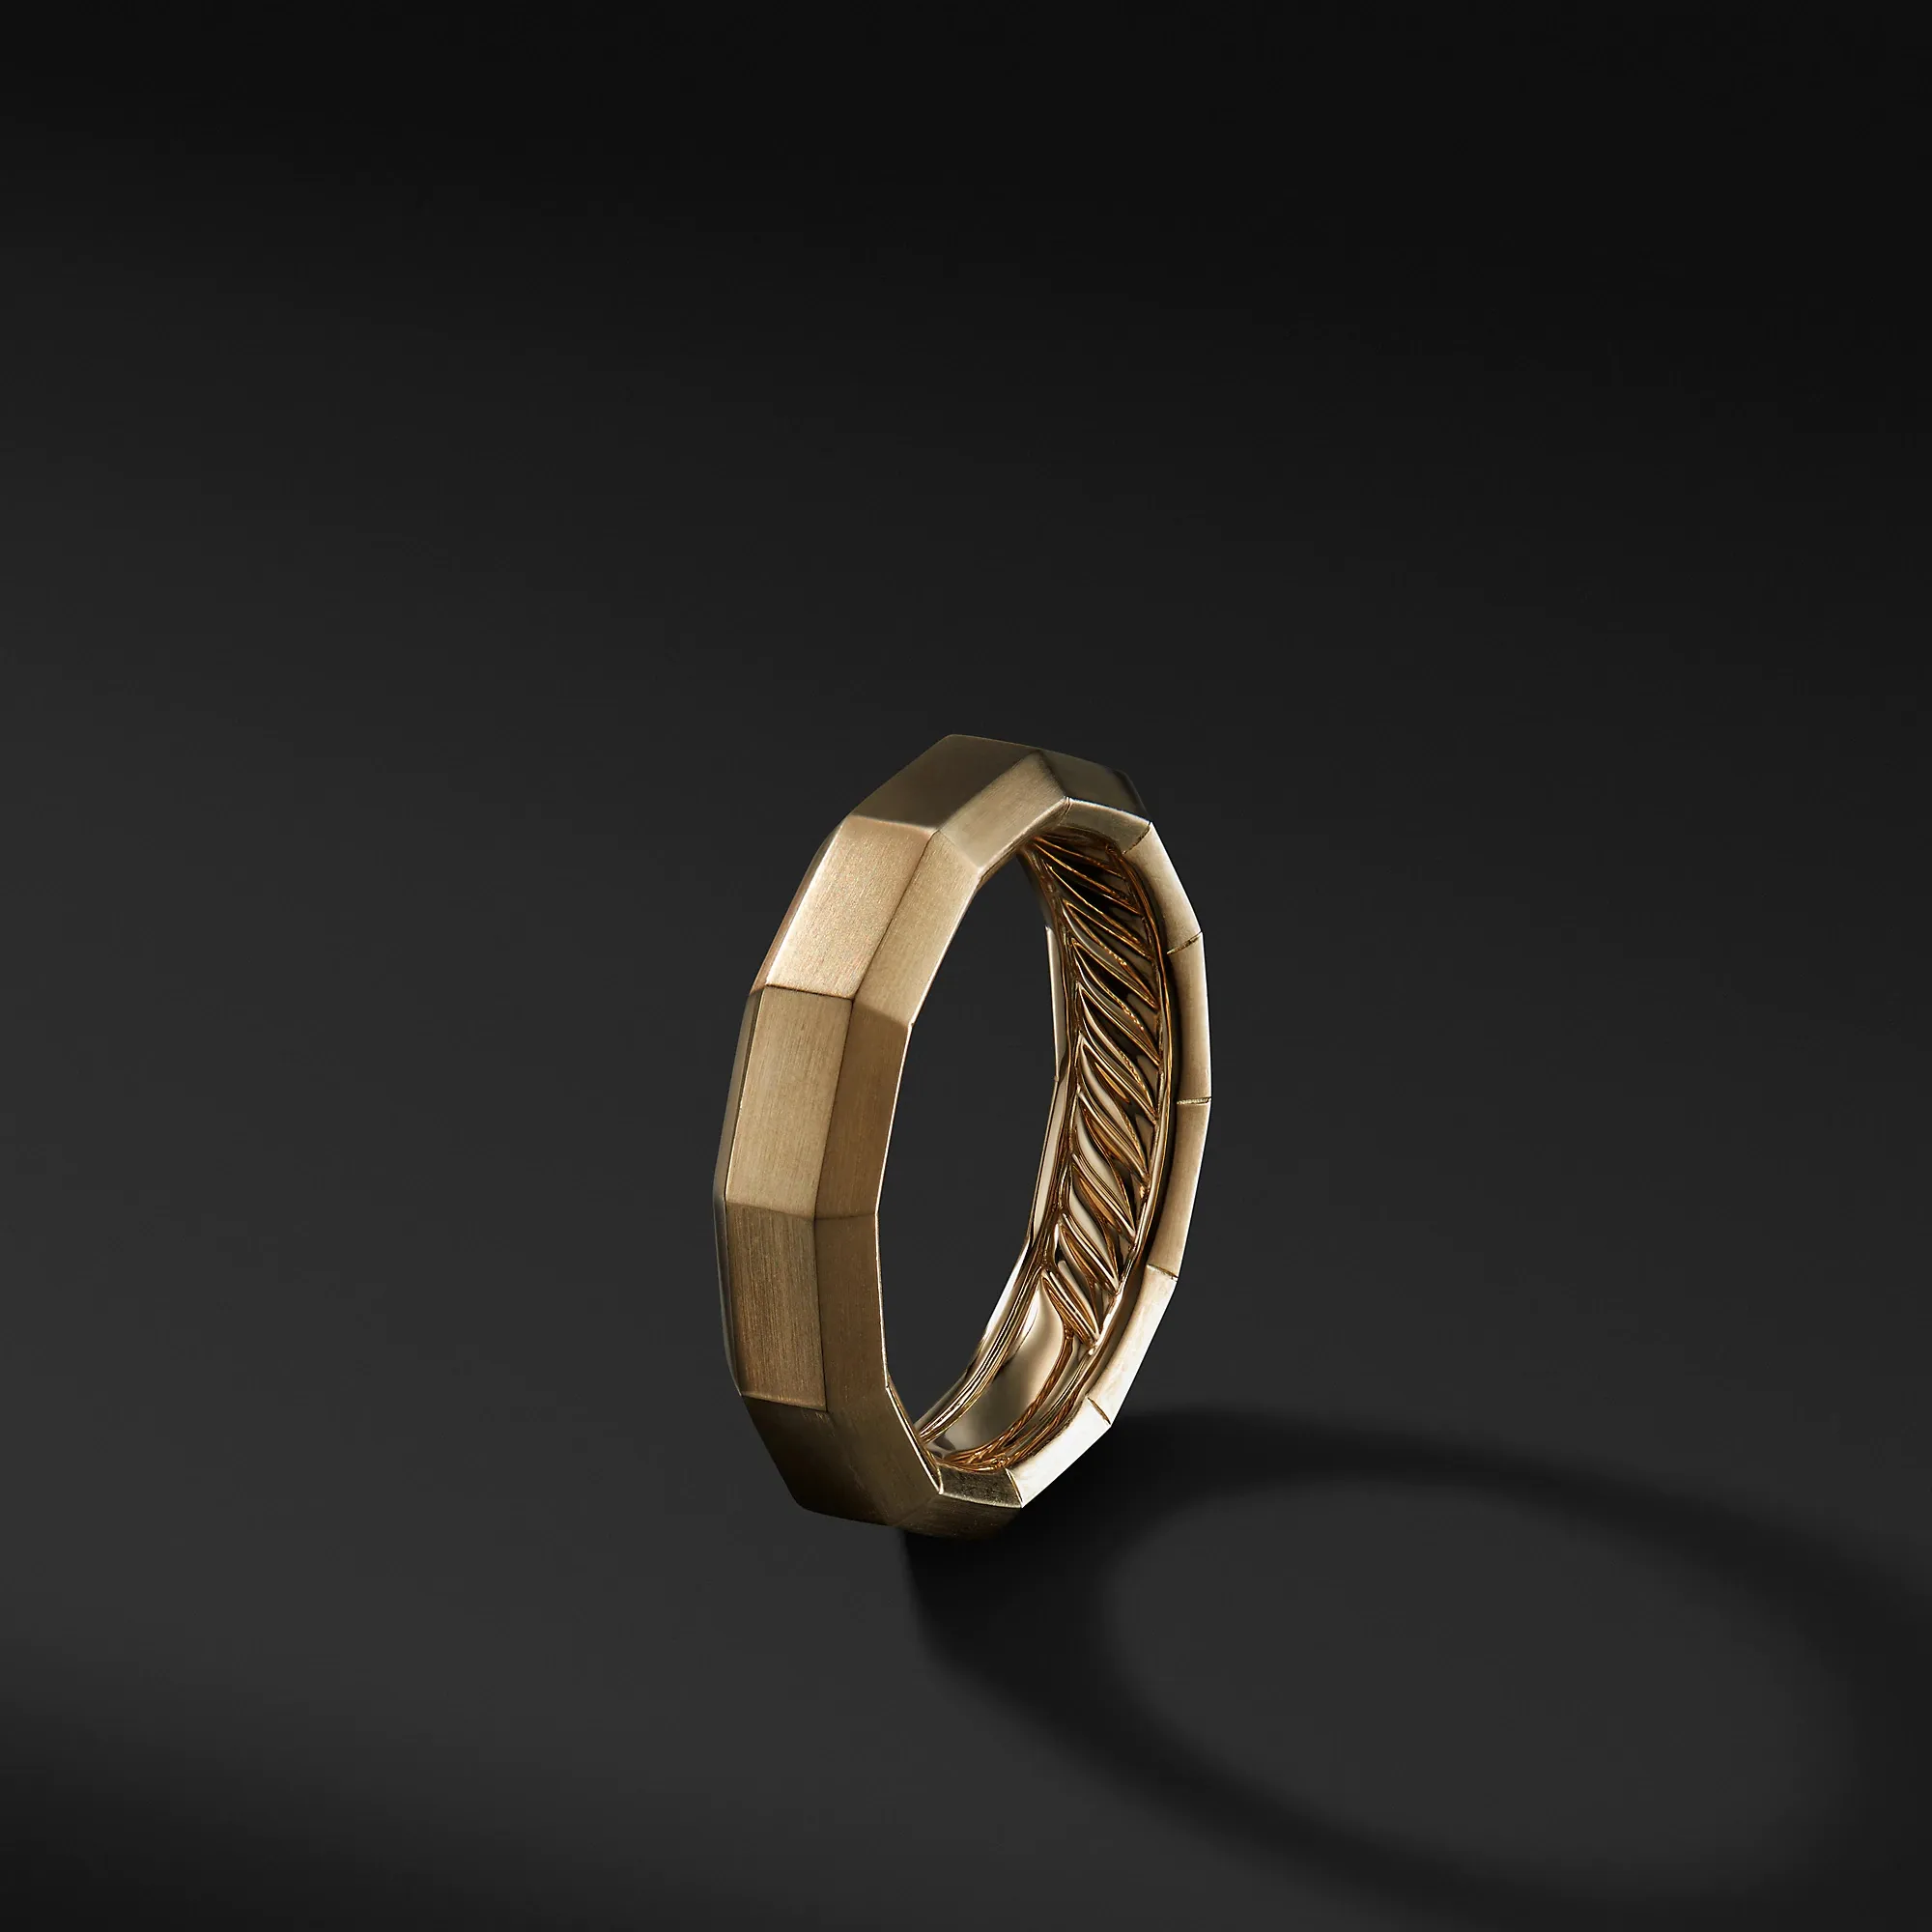 Minimal tasarım düzensiz basit özel Logo dövme paslanmaz çelik takı altın kaplama erkek parmak yüzük